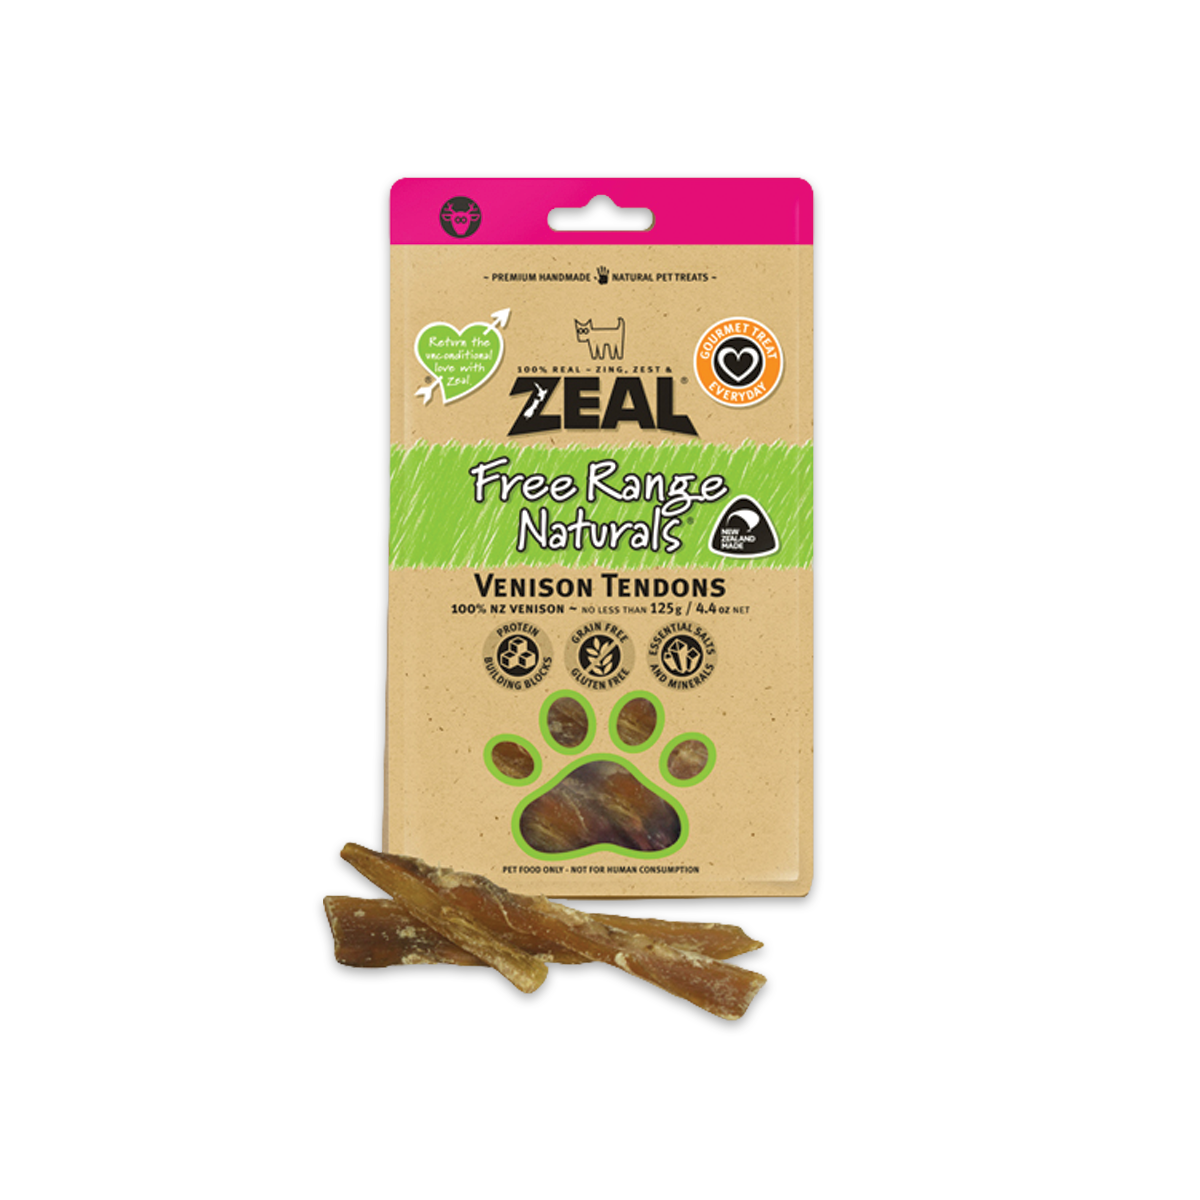 Zeal Freeze Dried Venison Tendons 125g - Gân nai sấy khô cho chó